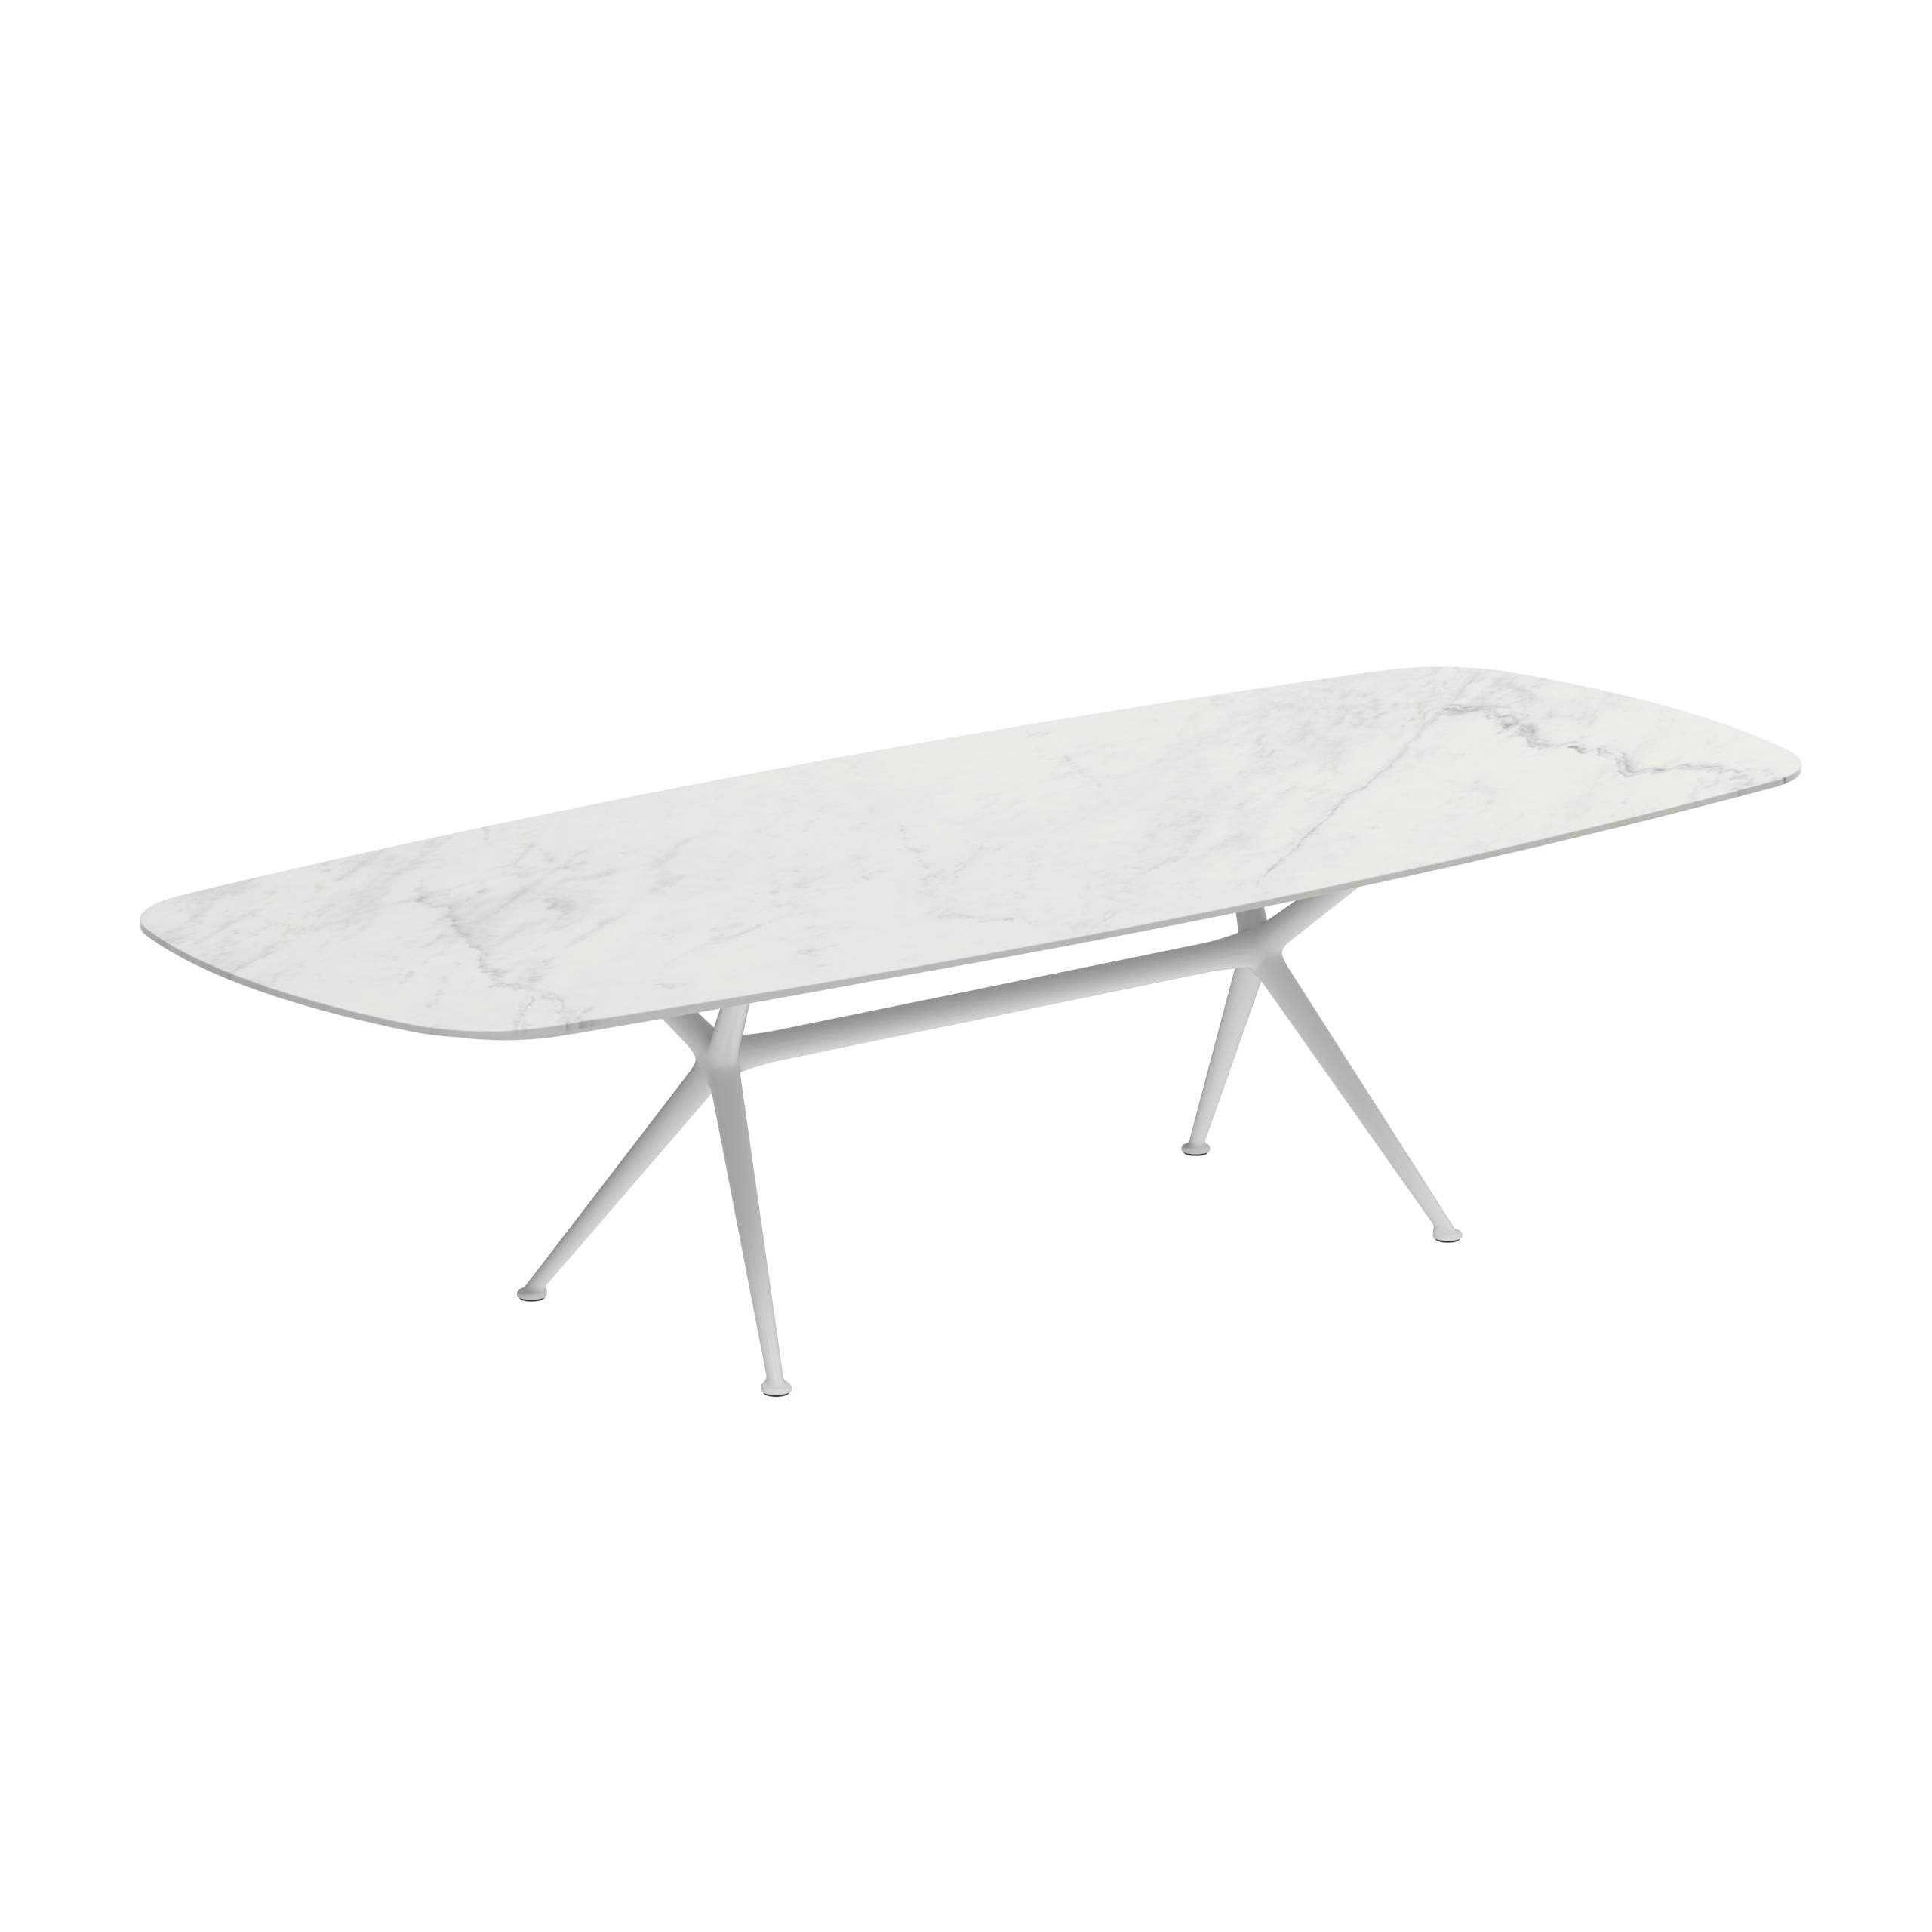 Exes Table 300x120cm Alu Legs White - Table Top Ceramic Bianco Statuario